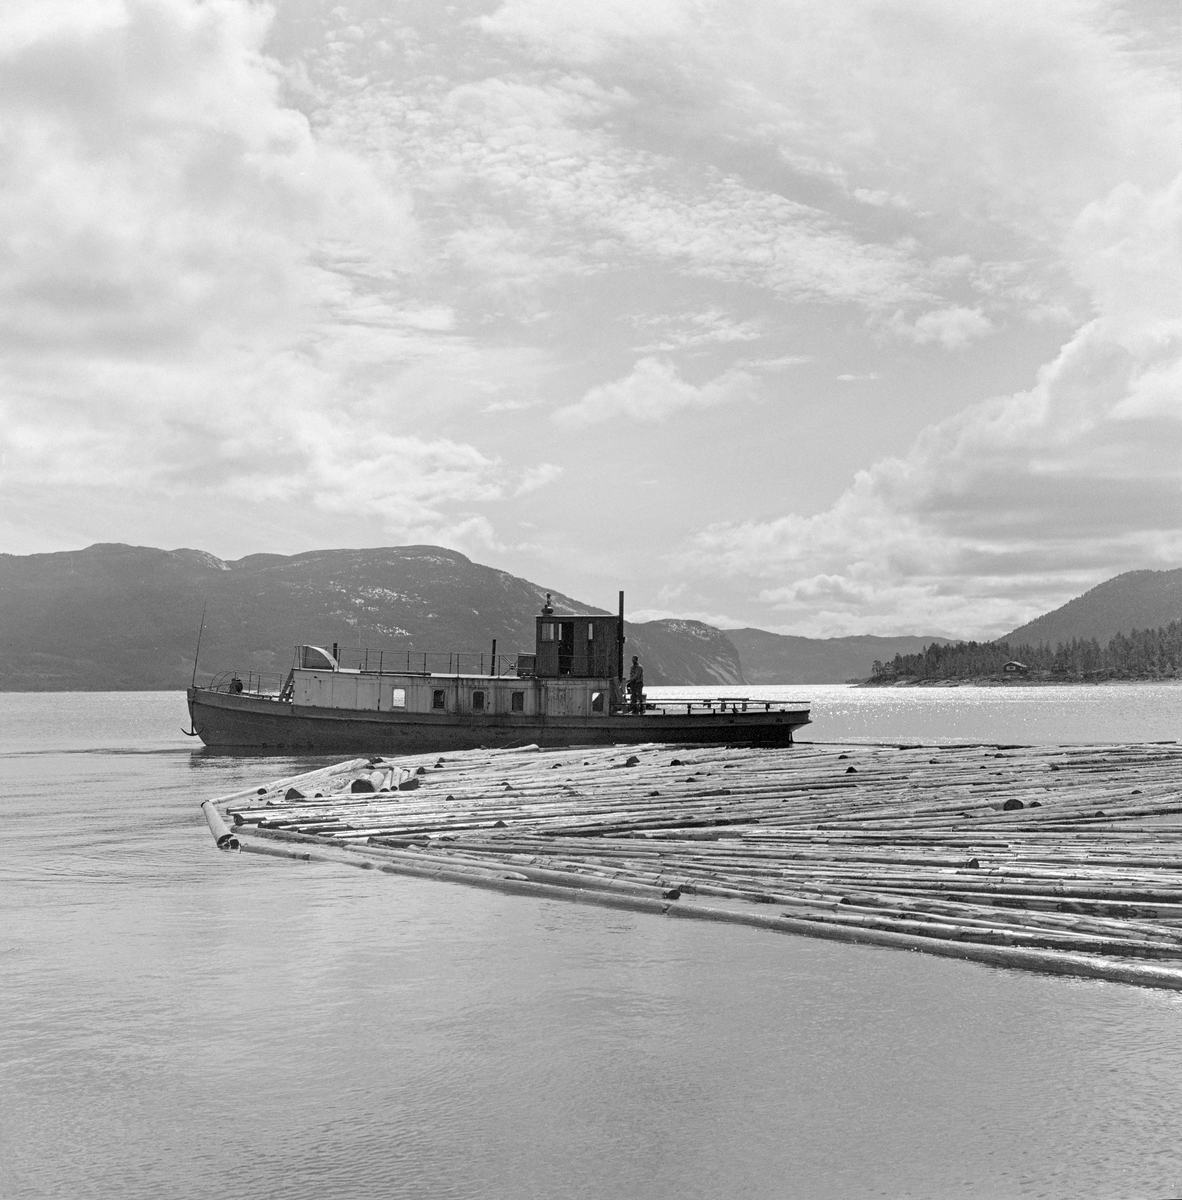 Slepebåt sleper tømmer over innsjø. Tømmersleping med slepebåten M/S Teisner på Fyresvatnet, Fyresdal, Telemark. Skipper Gunnar Sandvik . Båten ble bygd på Akers mekaniske verksted, og var opprinnelig en kombinert passasjer- og slepebåt fra 1876, Den fikk navnet M/S Teisner i 1913. Etterhvert ble det en ren slepebåt. Etter at tømmertransporten forsvant i 1971, ble båten tatt vare på av "Reiarlaget Teisners vener", men i 1990 ble båten dratt på land. Fyresvatn.